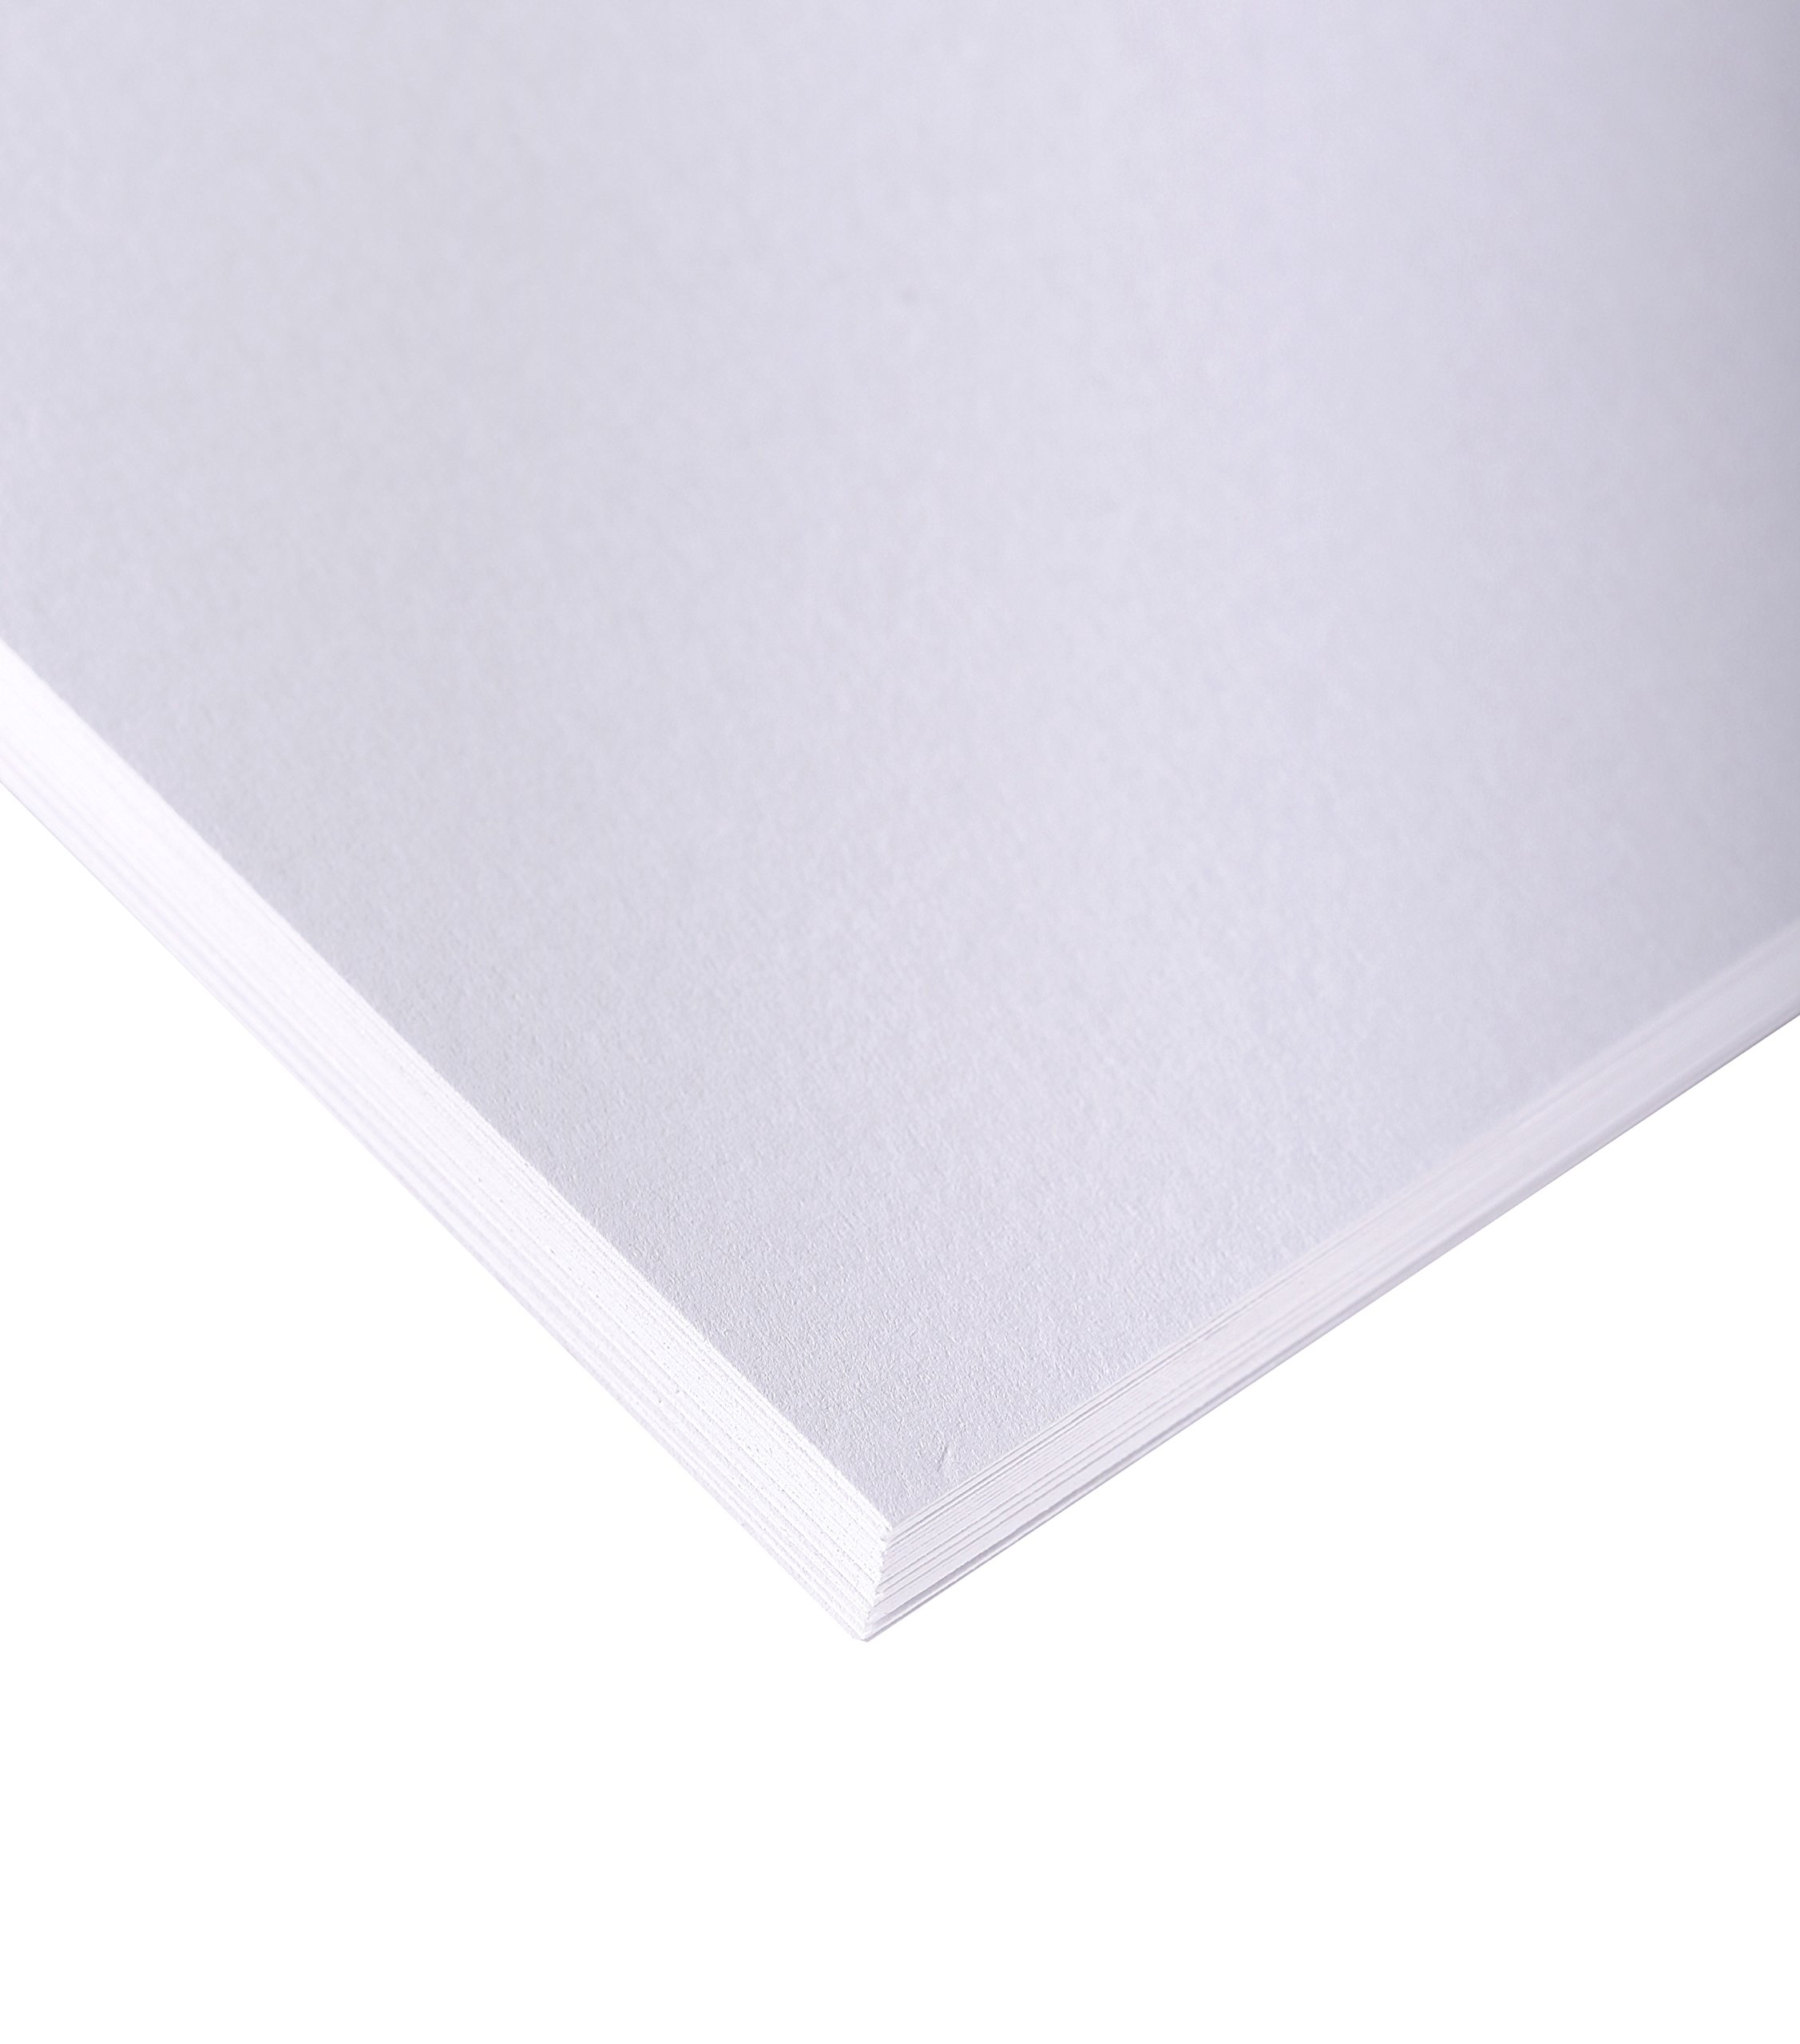 Clairefontaine 37324C Skizzenpapier (200 g, 105 x 75 cm, 10 Blatt, ideal für Künstler oder die Schule) weiß